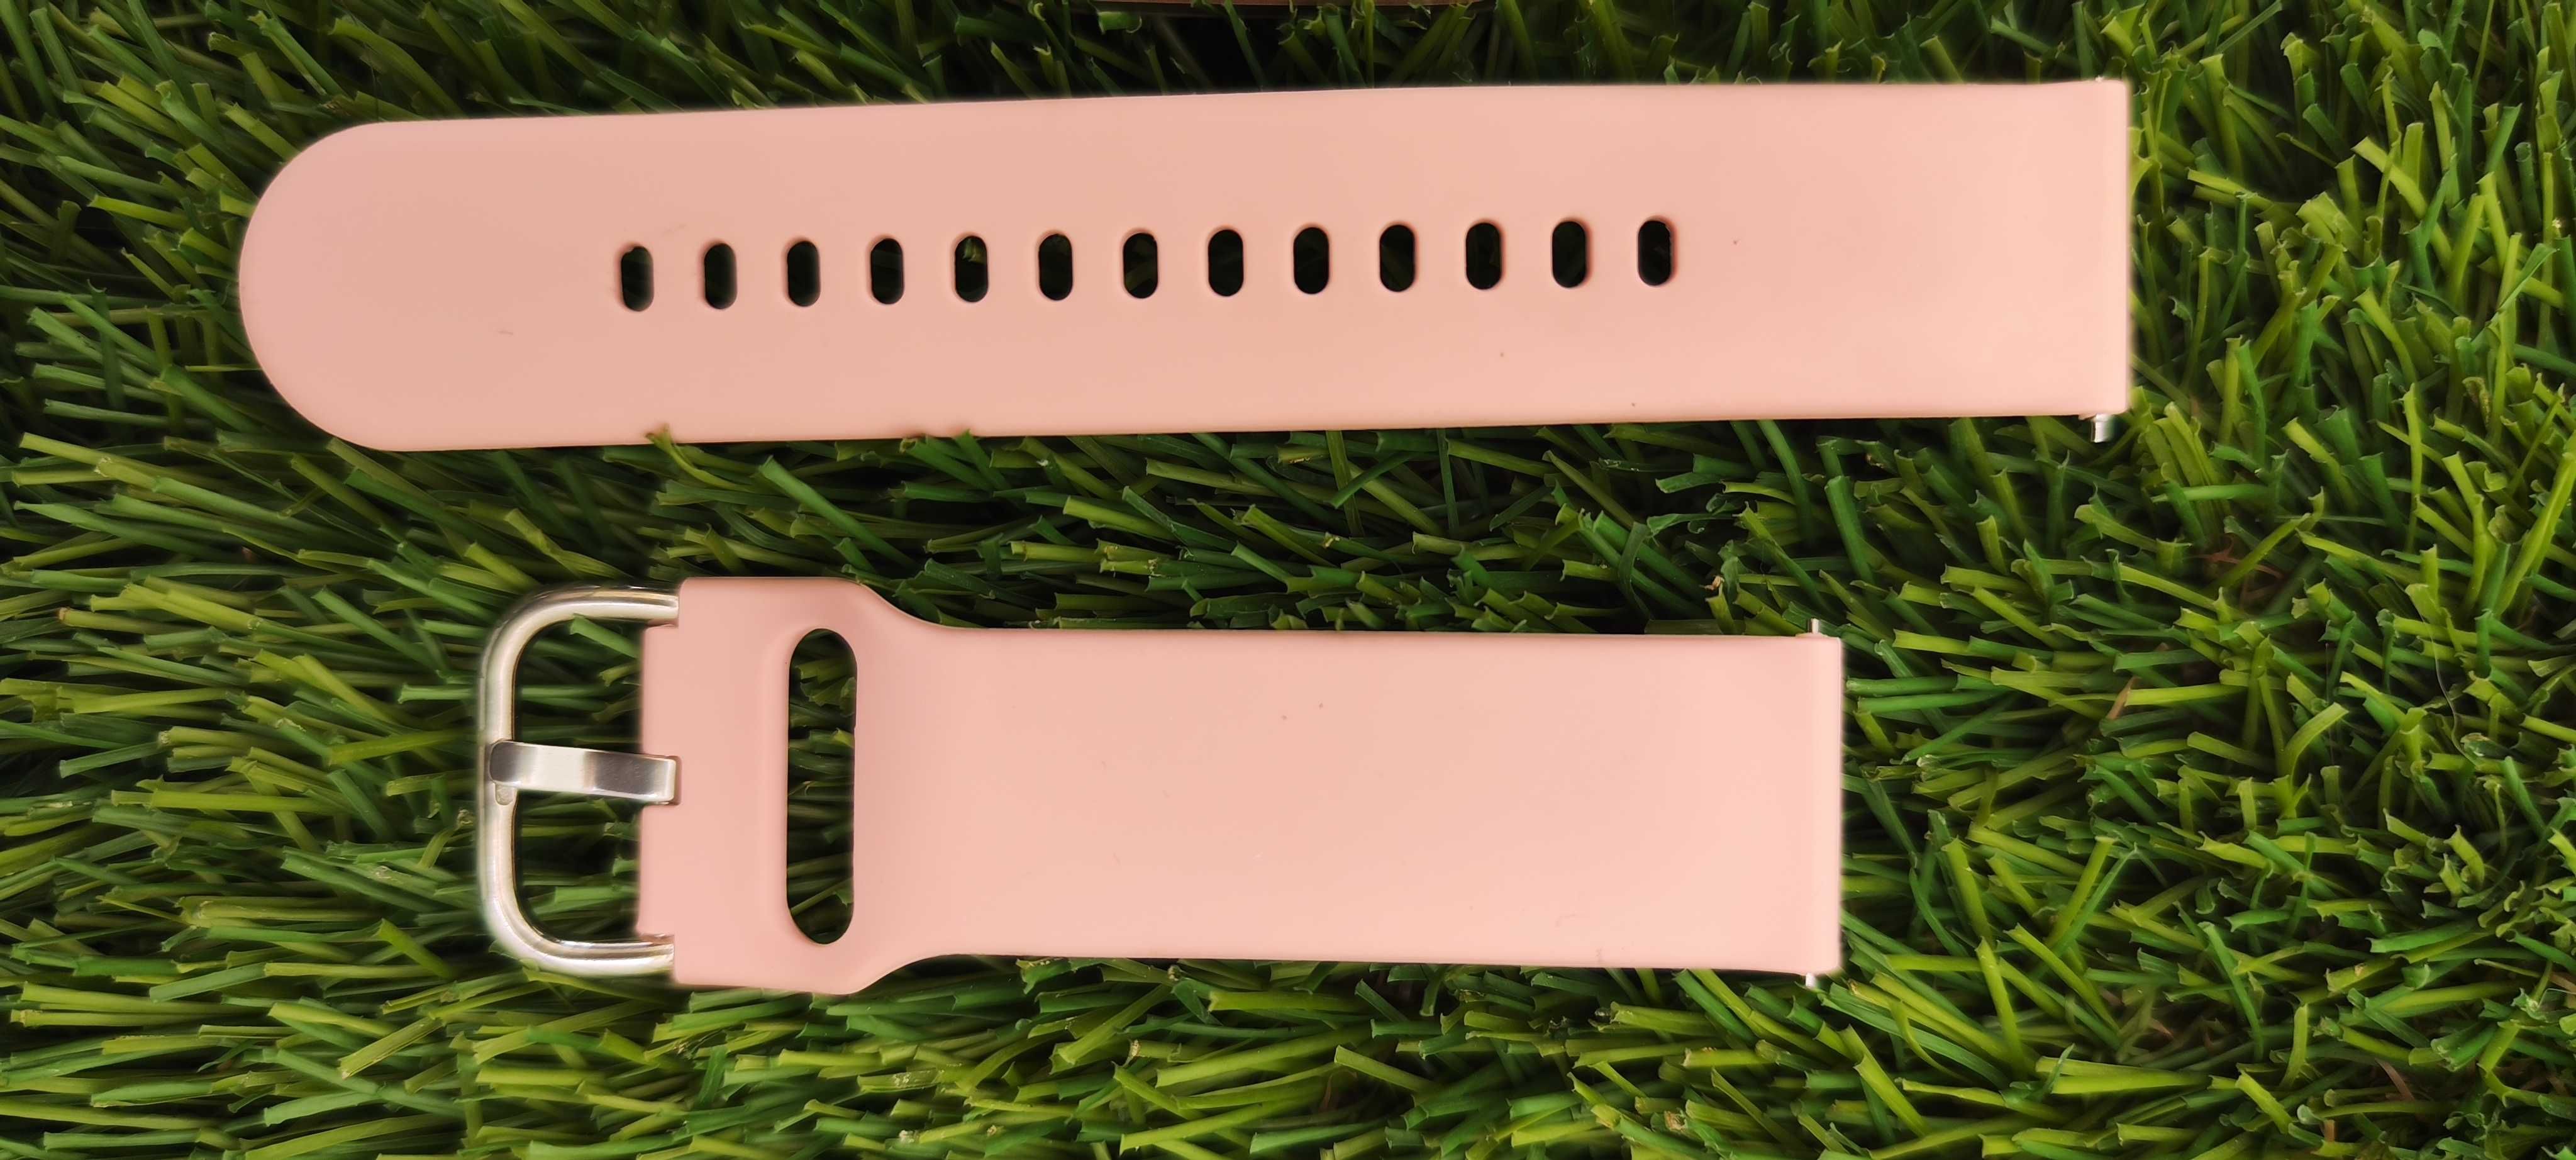 Relógio digital rosa com caixa original